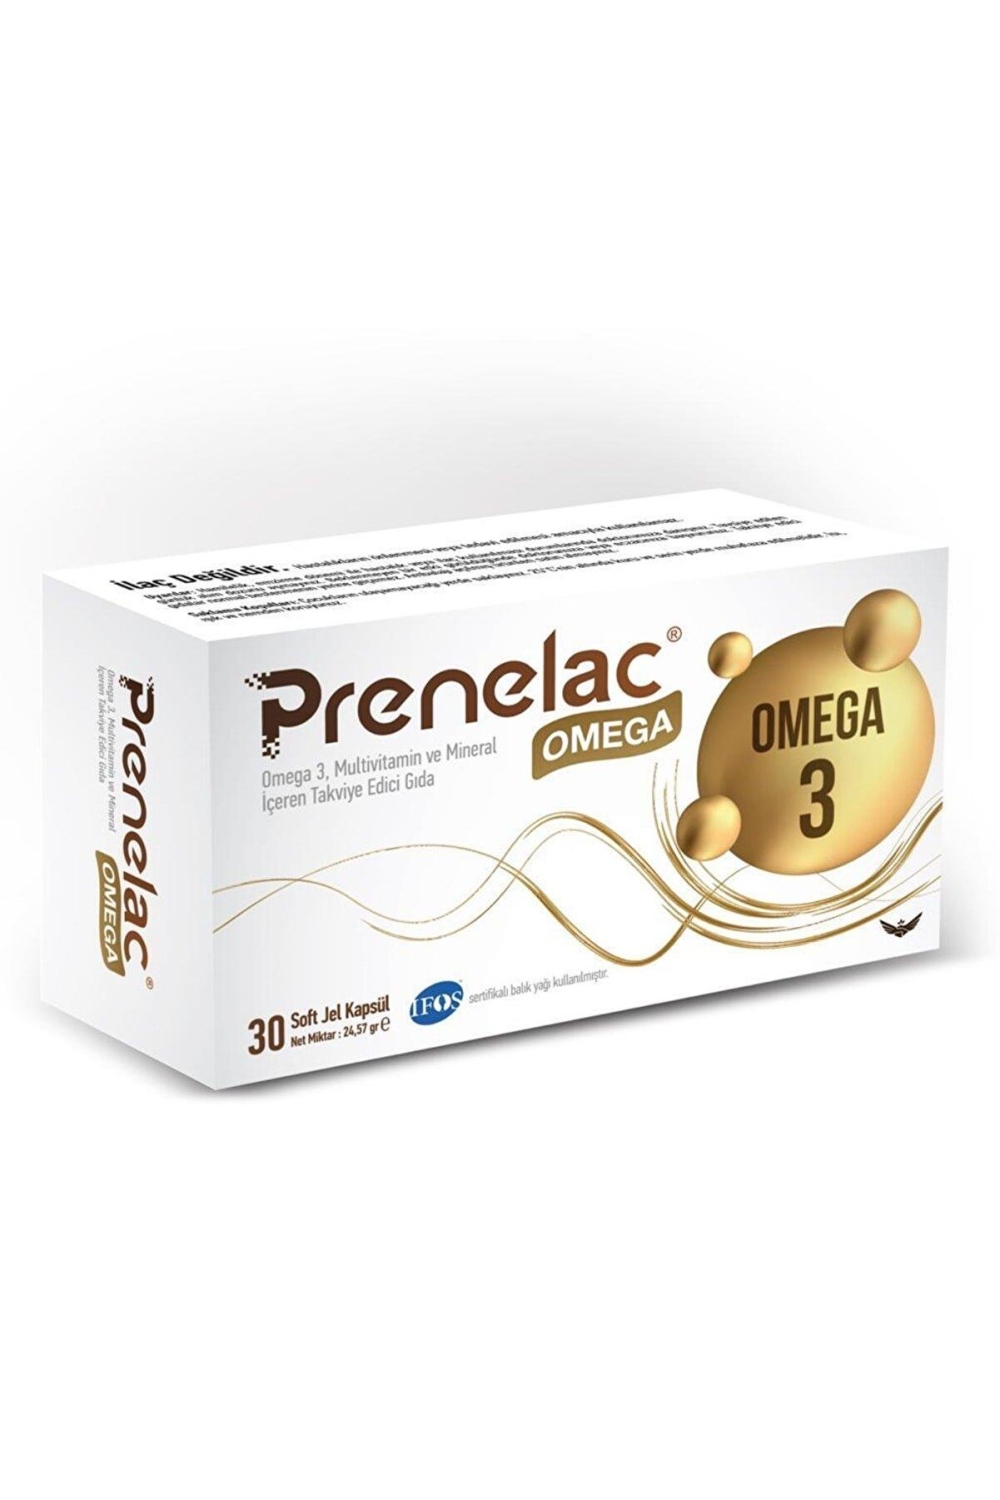 Prenelac Omega 30 Soft Jel Kapsül - 1